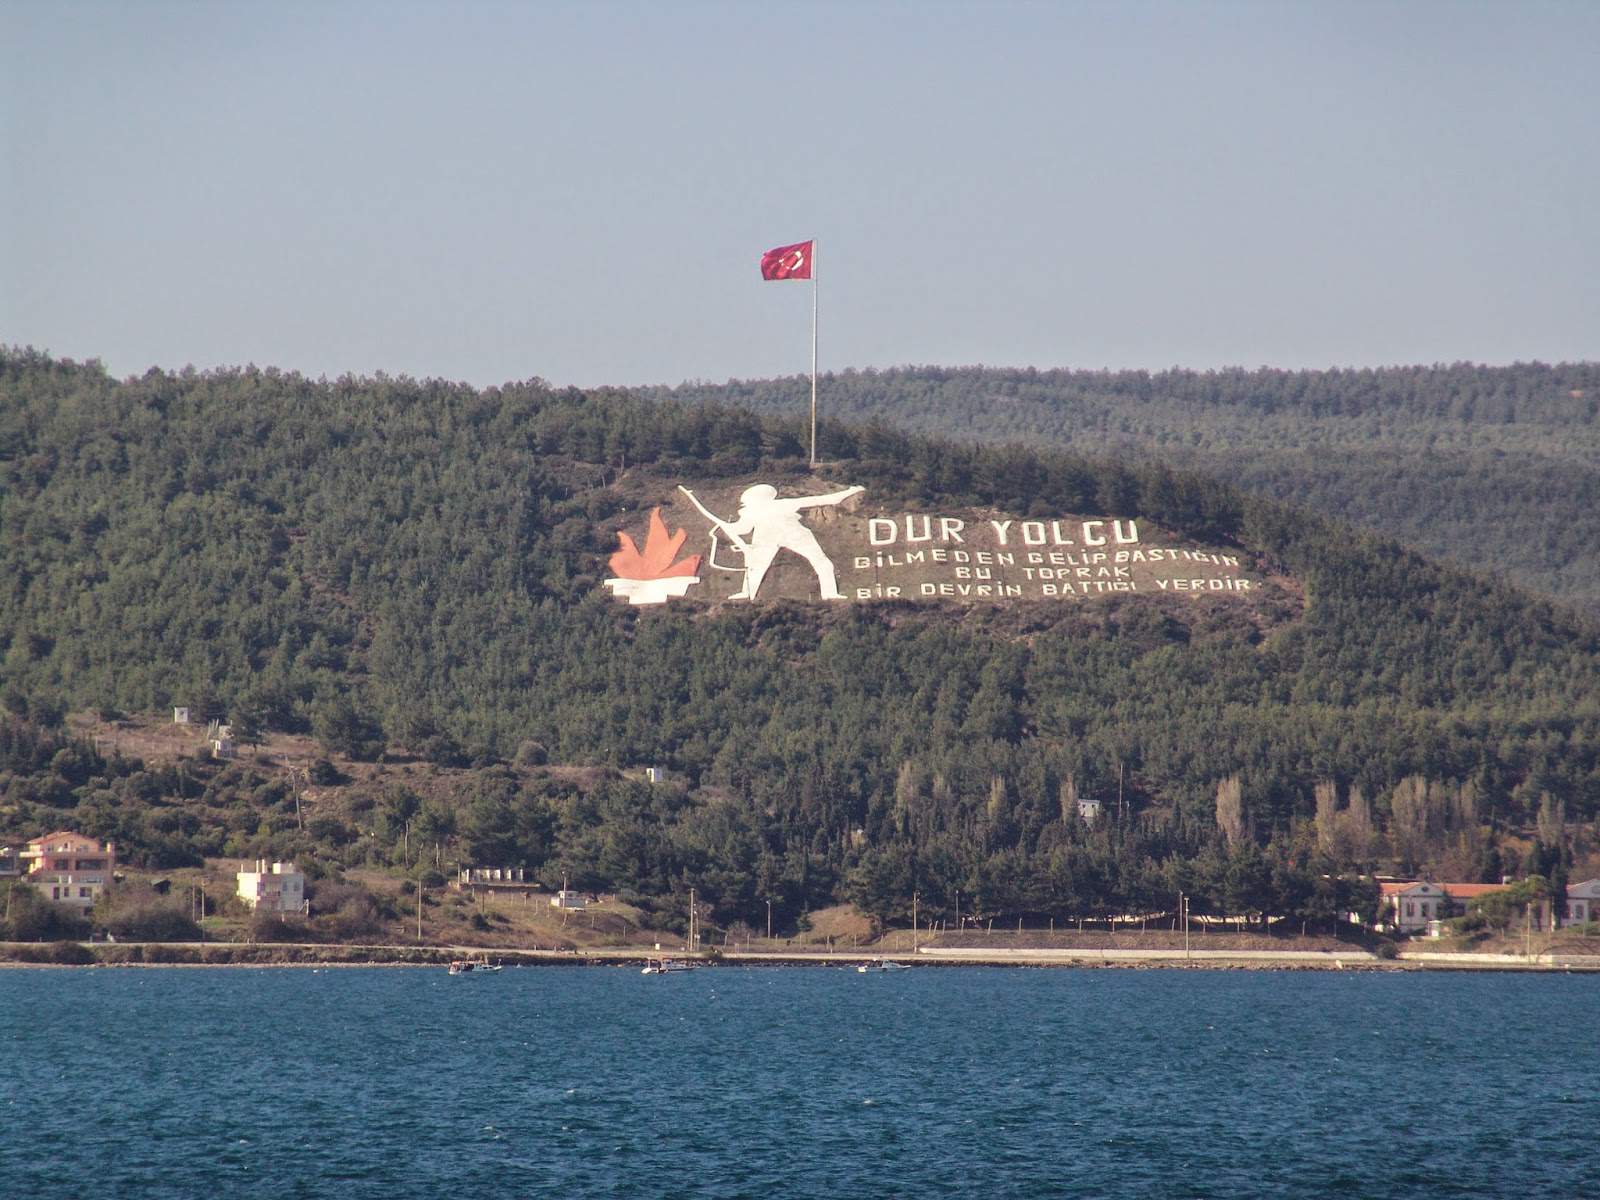 Dur Yolcu! in Çanakkale, Turkey